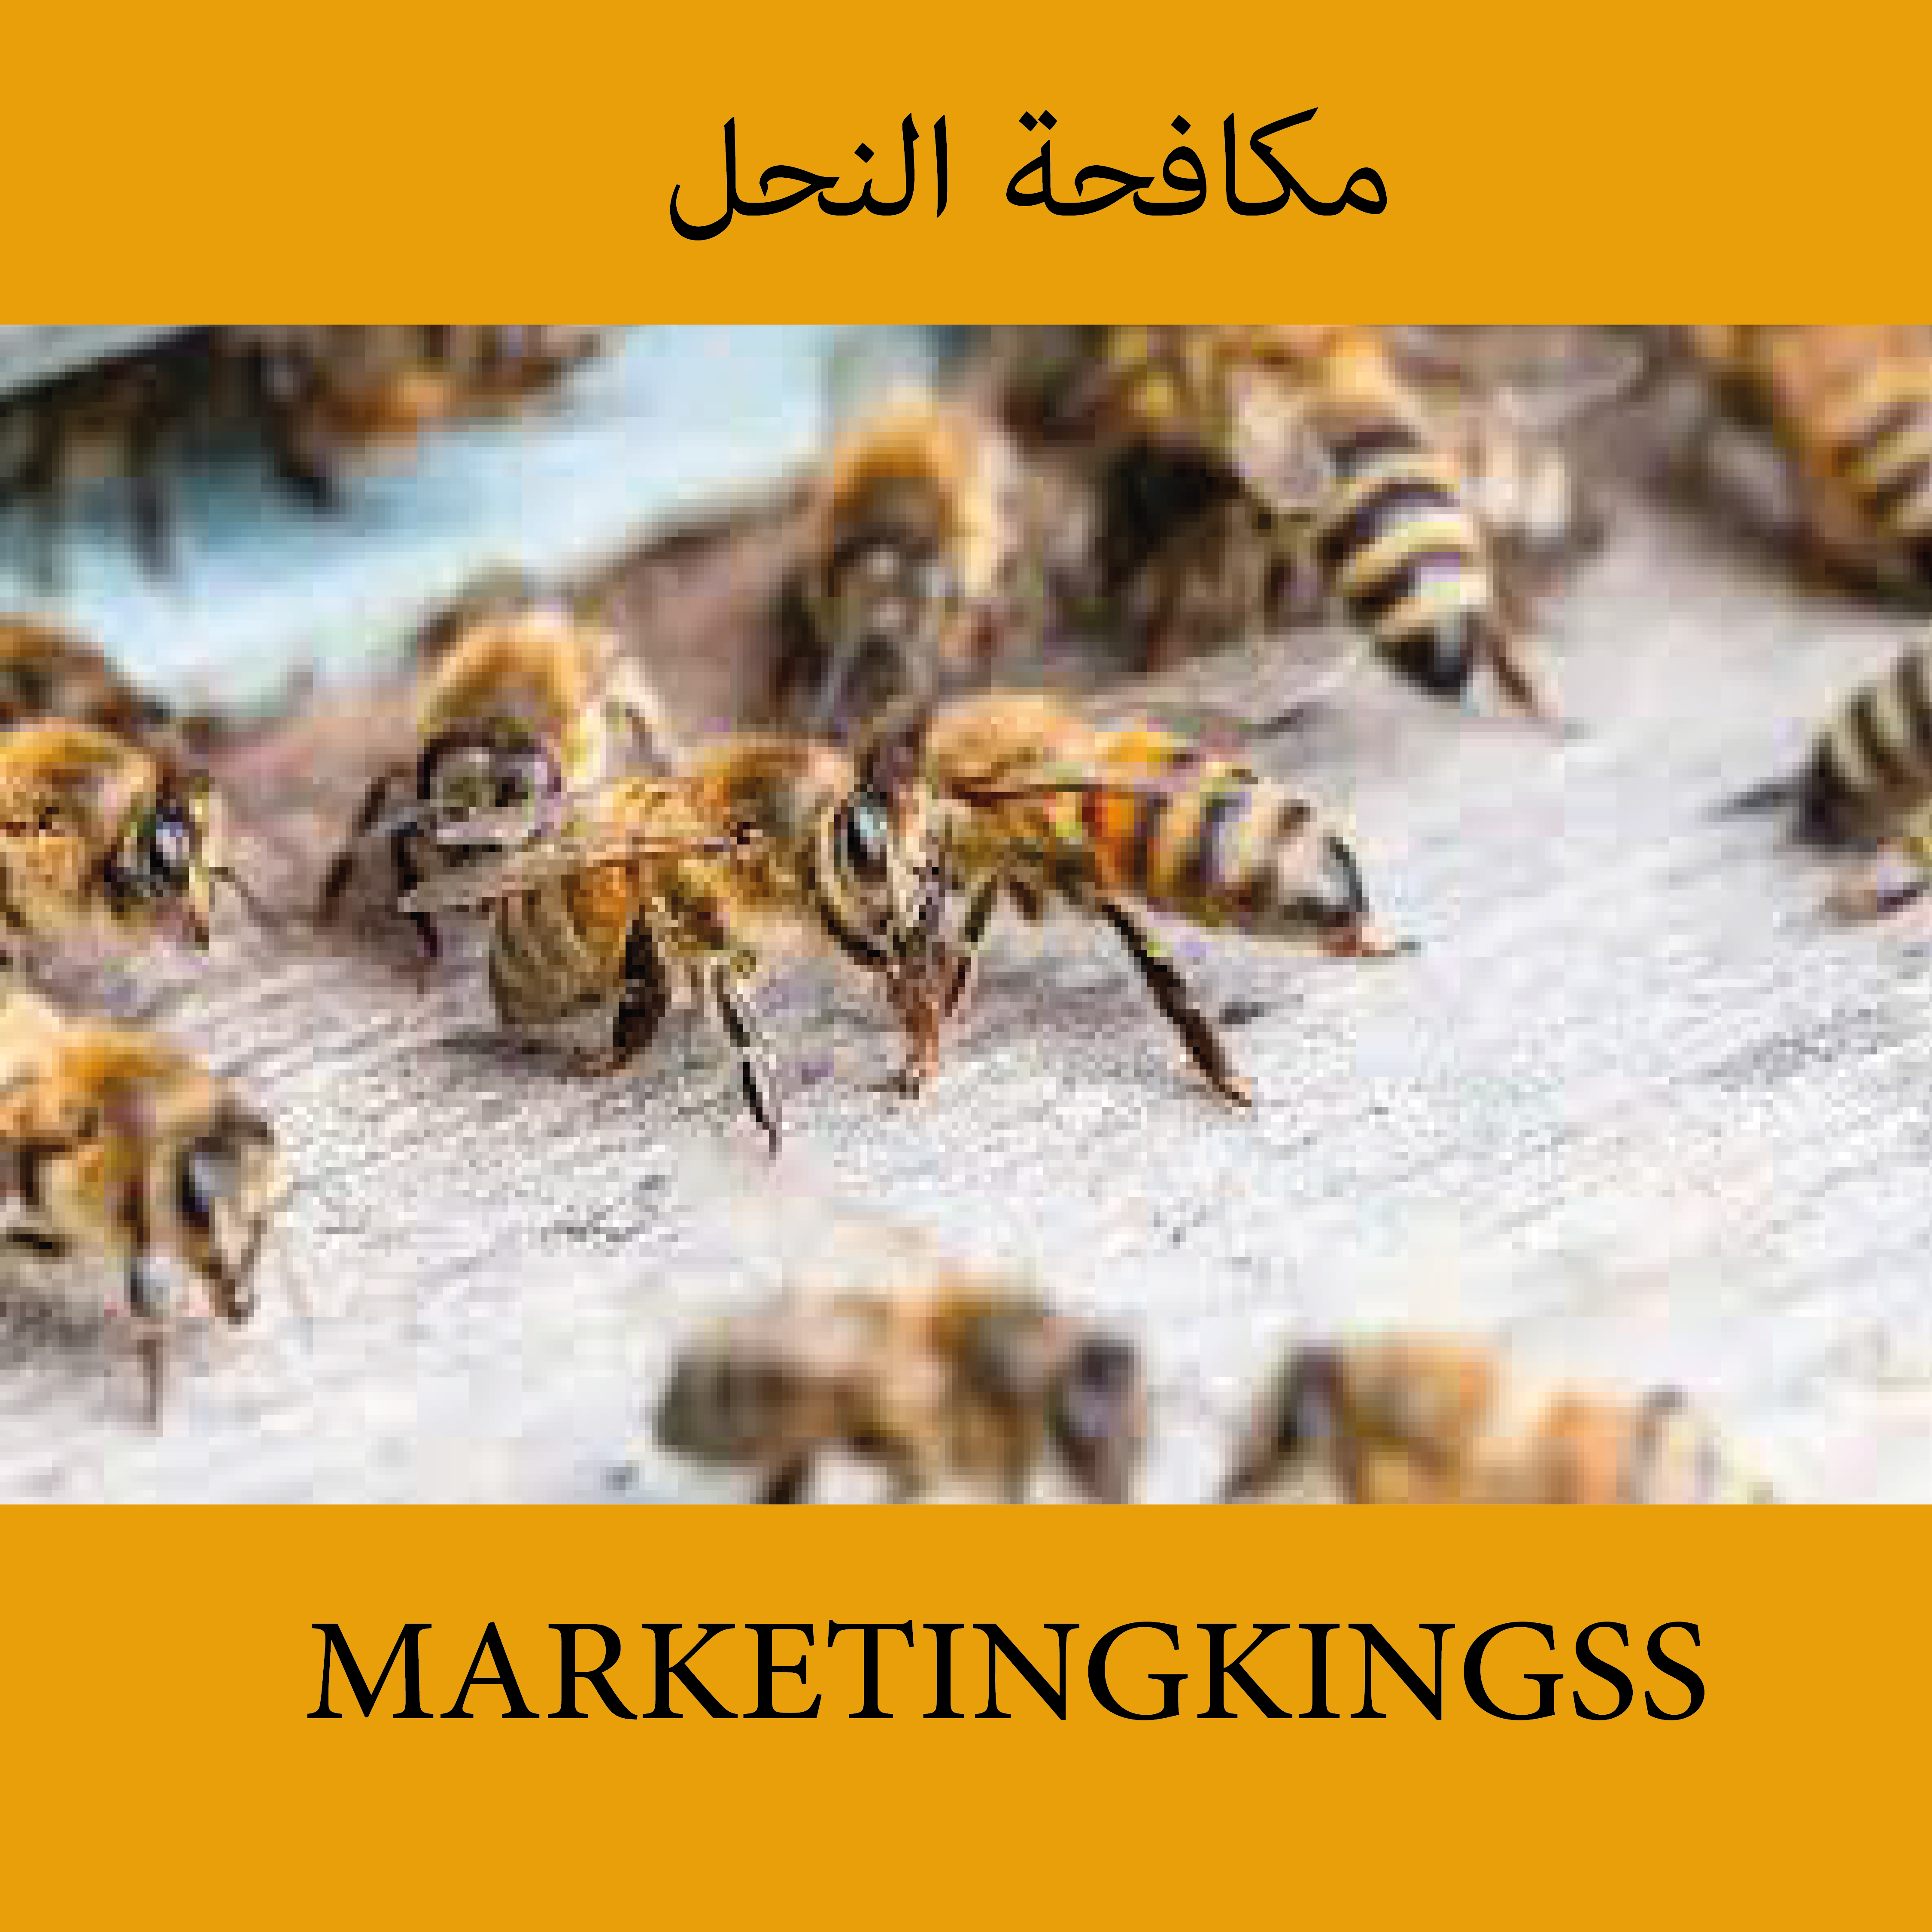 شركة مكافحة النحل بالكويت-مكافحة النحل في المنزل -القضاء علي النحل -شركات مكافحة النحل-طريقة مكافحة النحل -كيفية مكافحة النحل